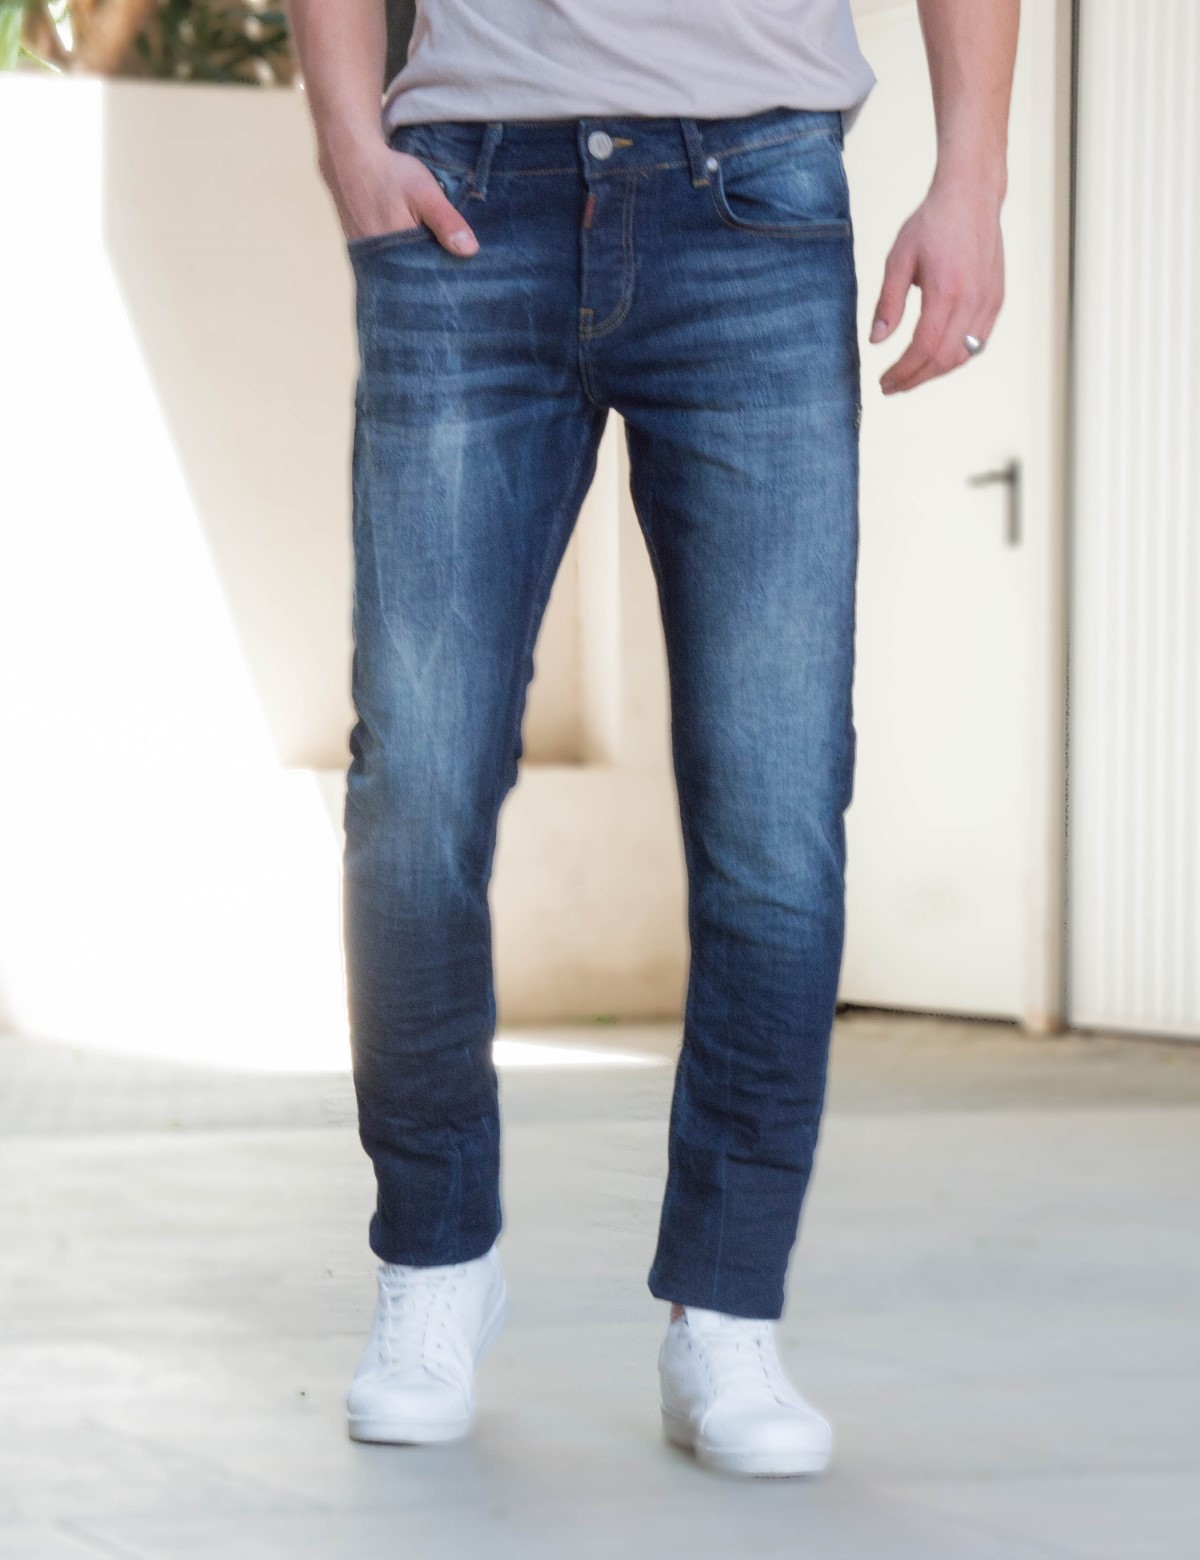 ΑΝΔΡΑΣ > ΑΝΔΡΙΚΑ ΡΟΥΧΑ > ΠΑΝΤΕΛΟΝΙΑ > Τζήν / Jeans Profil ανδρικό μπλε τζιν παντελόνι με φθορές 900165